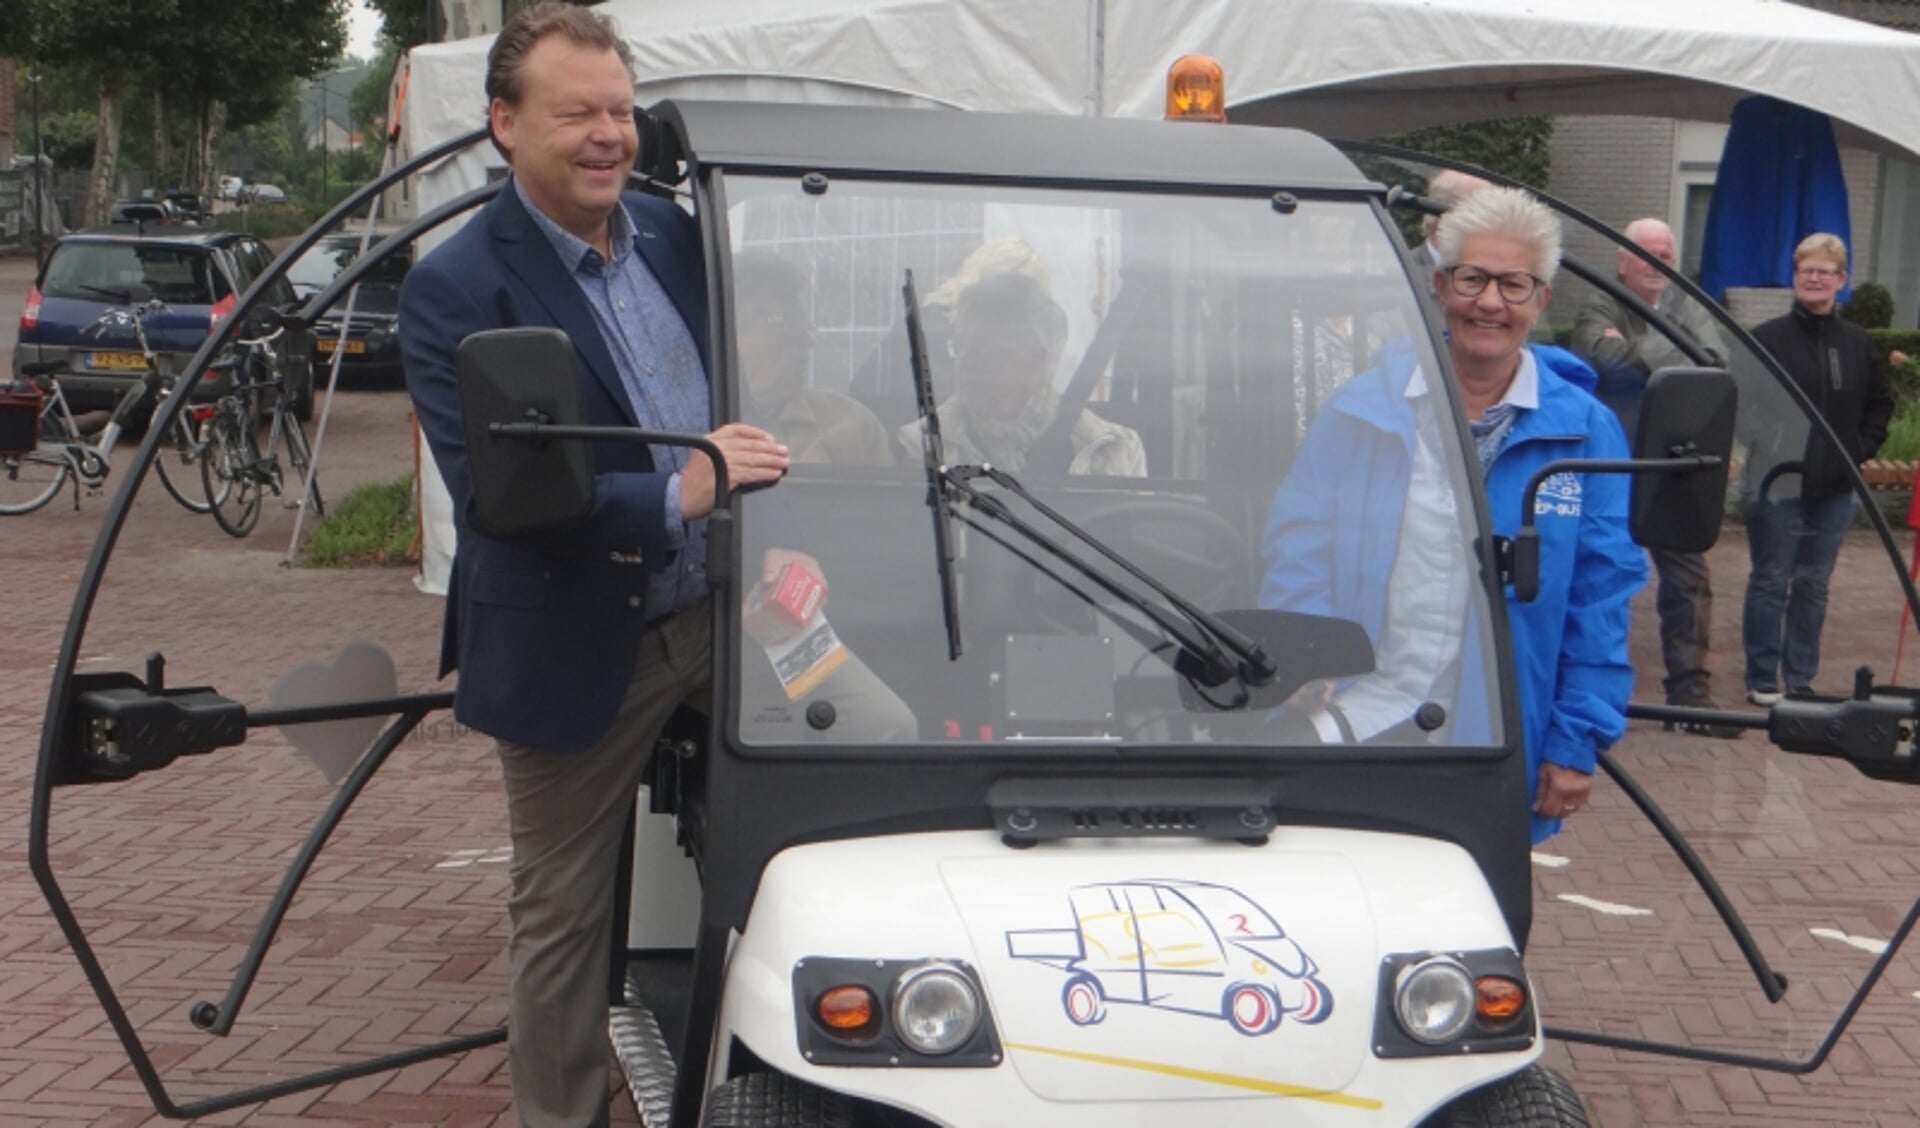 Wethouder van de gemeente Meierijstad Eus Witlox gaf op zaterdag 16 september het officiële startsein voor de Wèp-bus. 